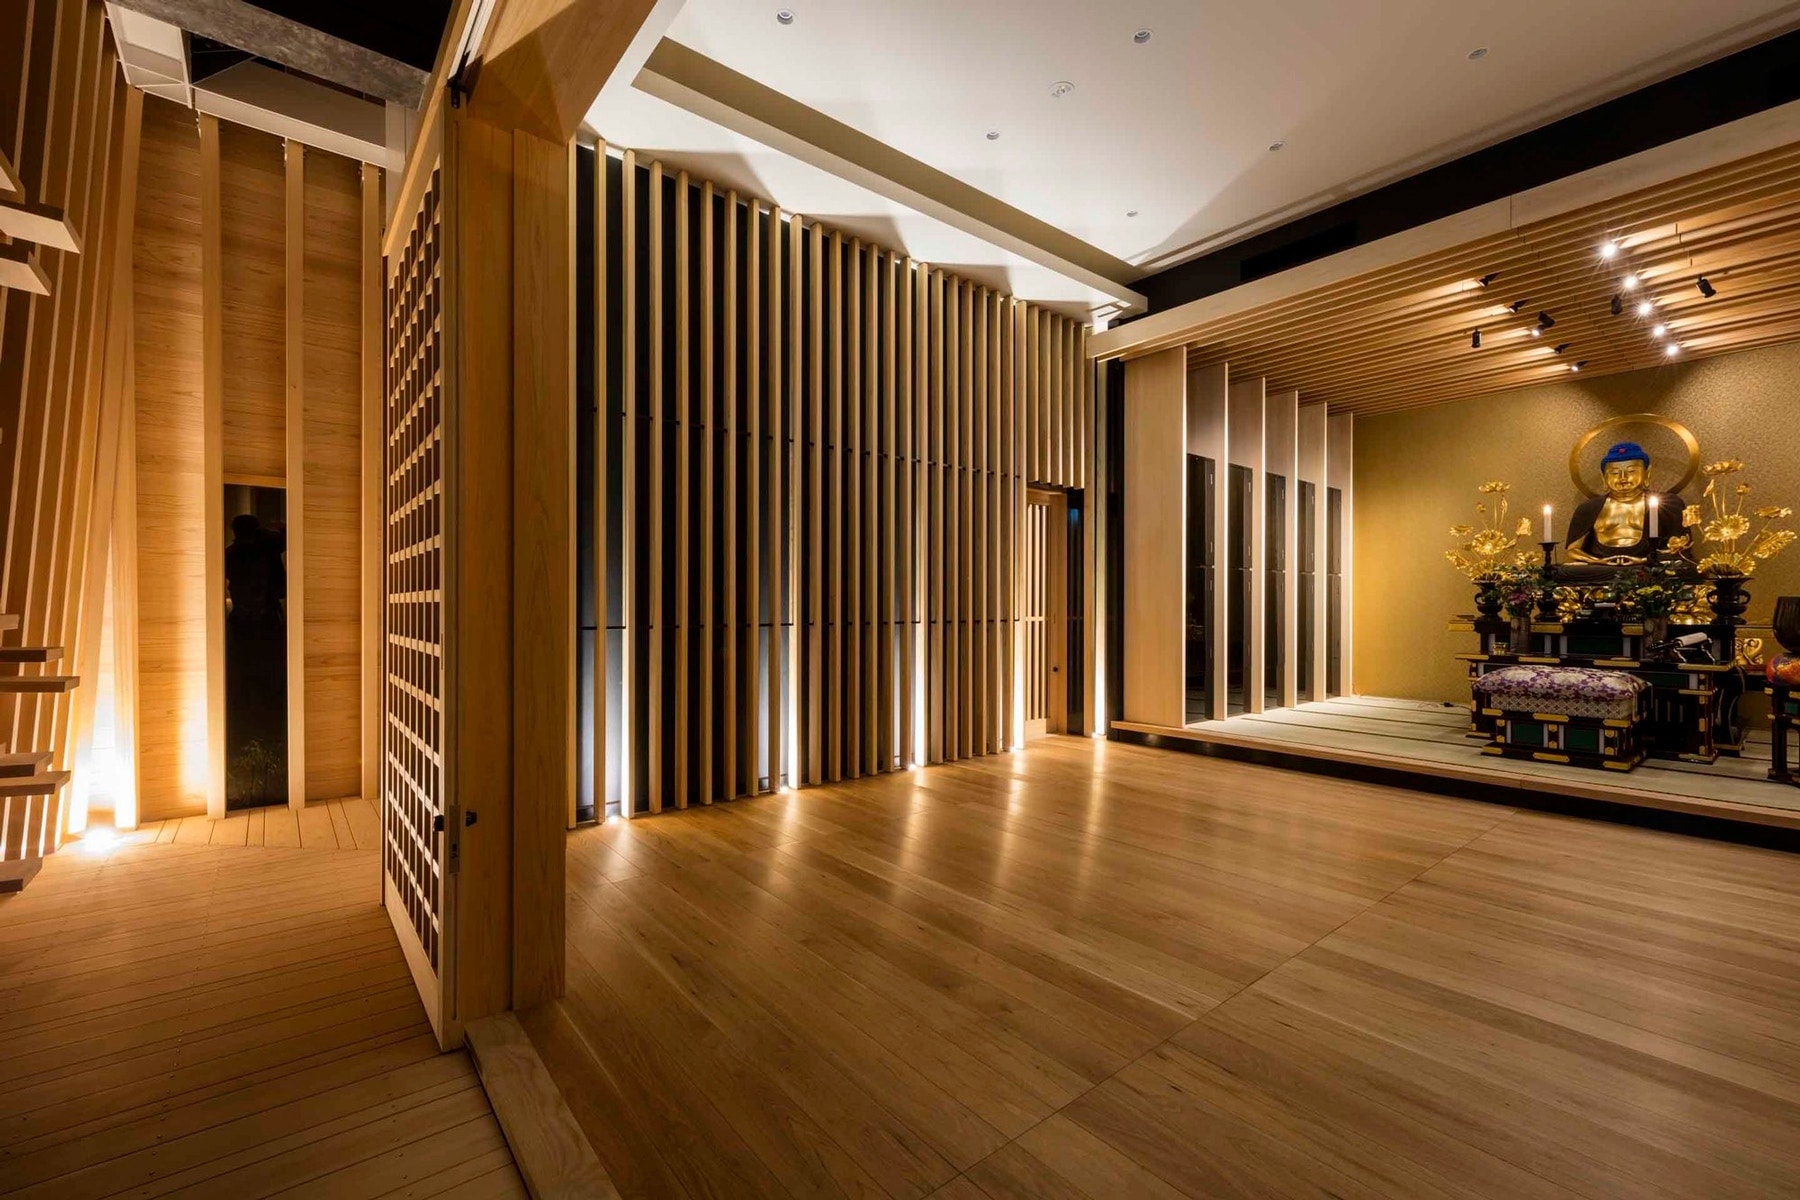 建築設計公司 Takashi Okuno 於日本打造摩登寺廟